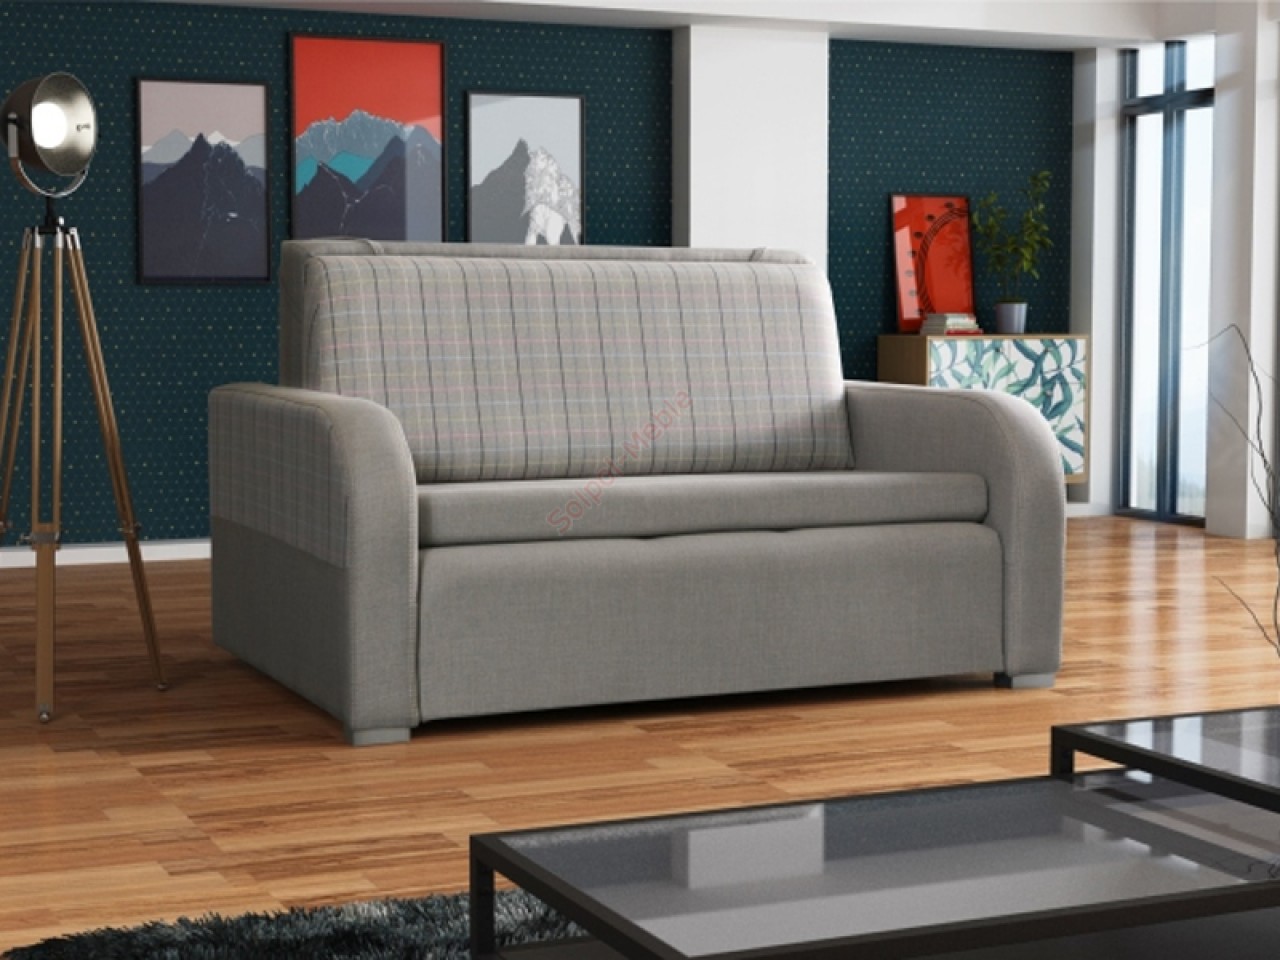 Sofa rozkładana SAMANTA 233 cm z funkcją spania do salonu.